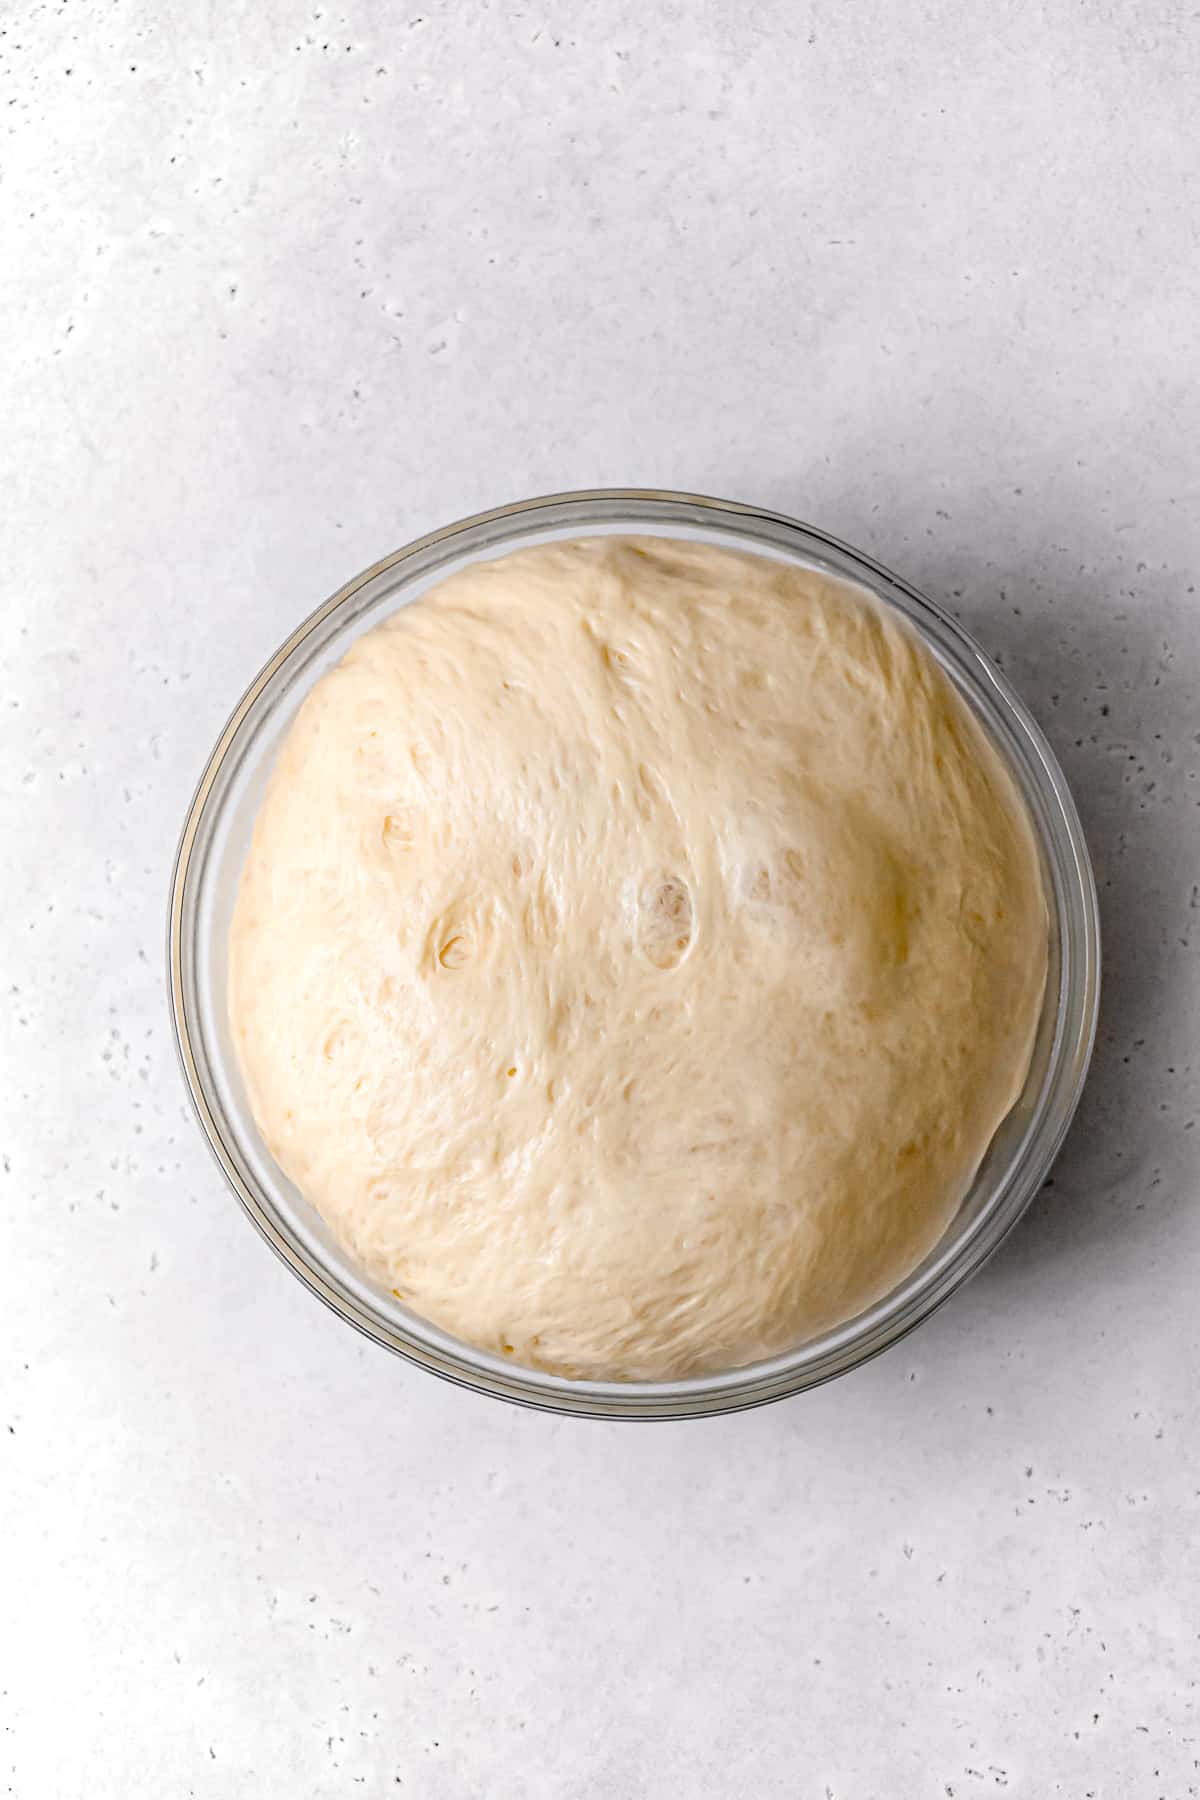 proofed brioche dough in glass bowl.